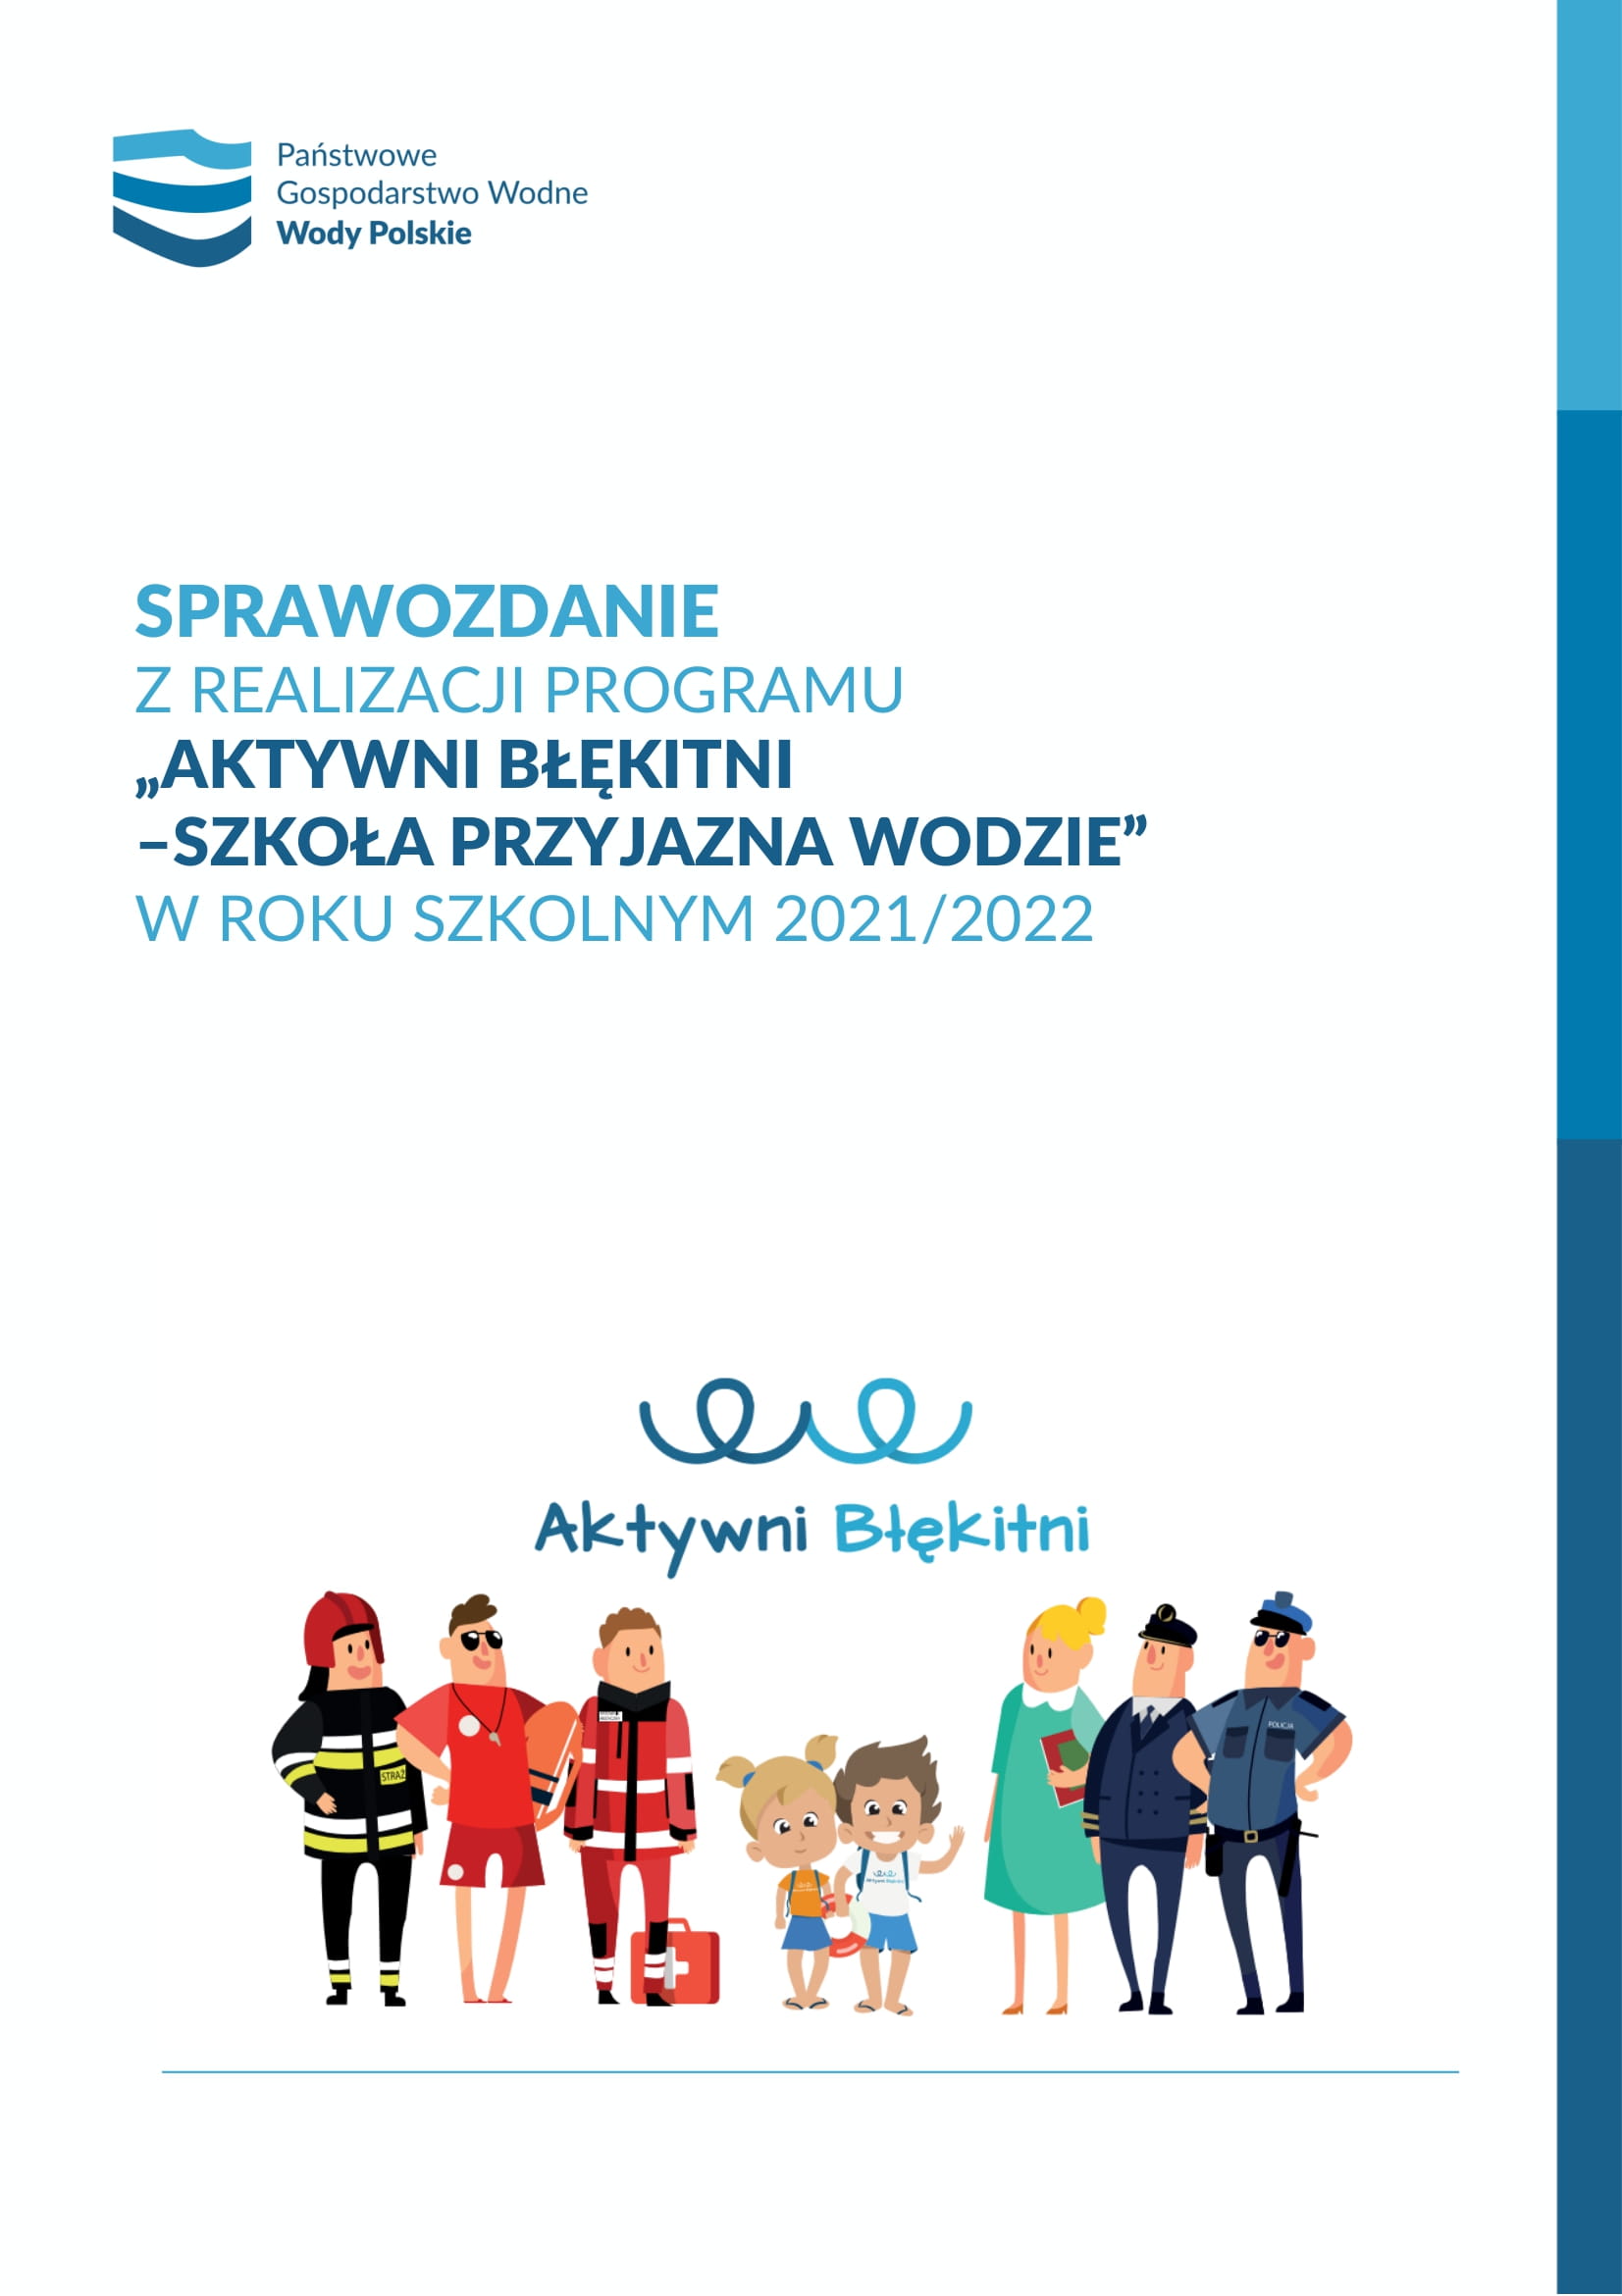 Sprawozdanie z realizacji programu Aktywni Błękitni w roku szkolnym 2021/2022